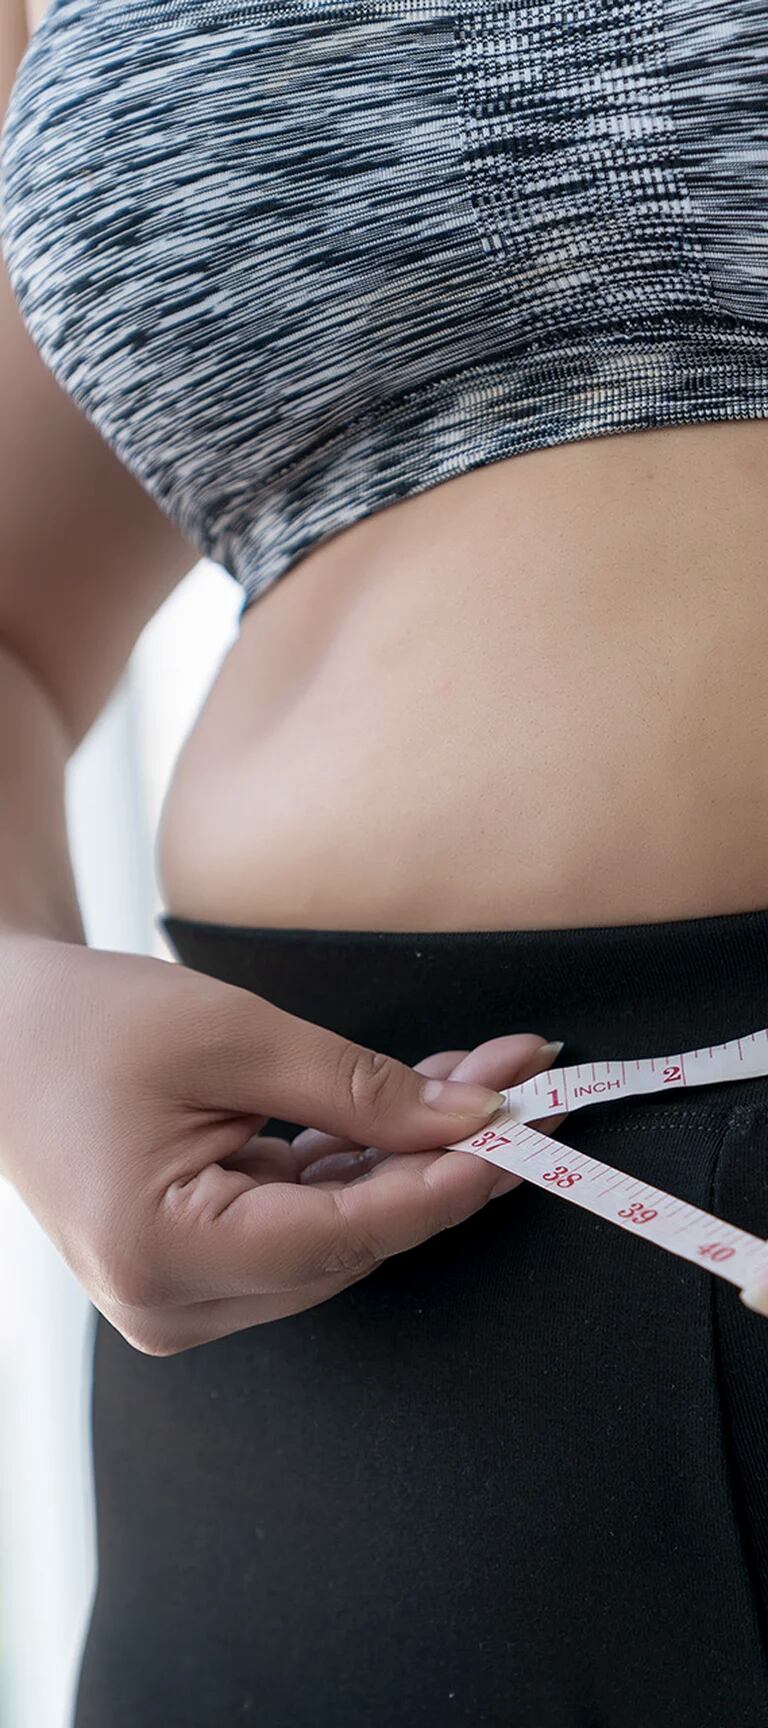 Dra. Maria Diaz L. on X: ⚠️IMPORTANTE Algunas personas han medido MAL su circunferencia  abdominal toda la vida ¿sabes como medir tu barriga? Te enseño como es,  para saber si estas en